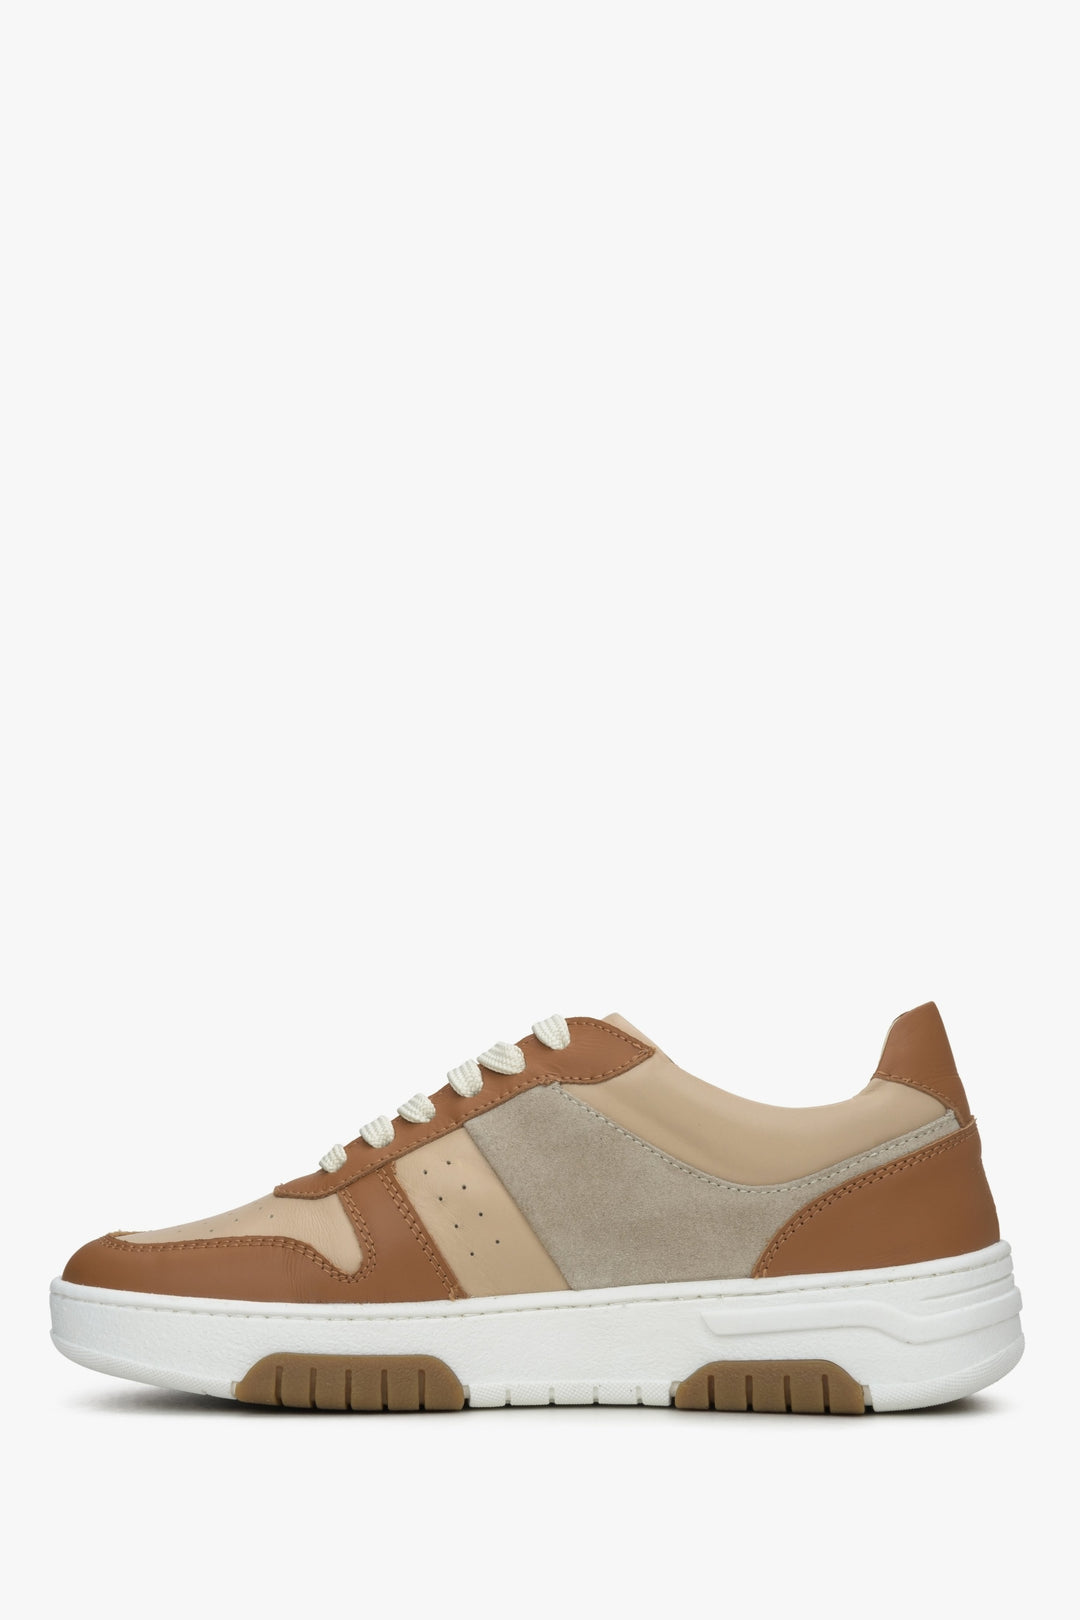 Estro women's brown and white sneakers - shoe profile.